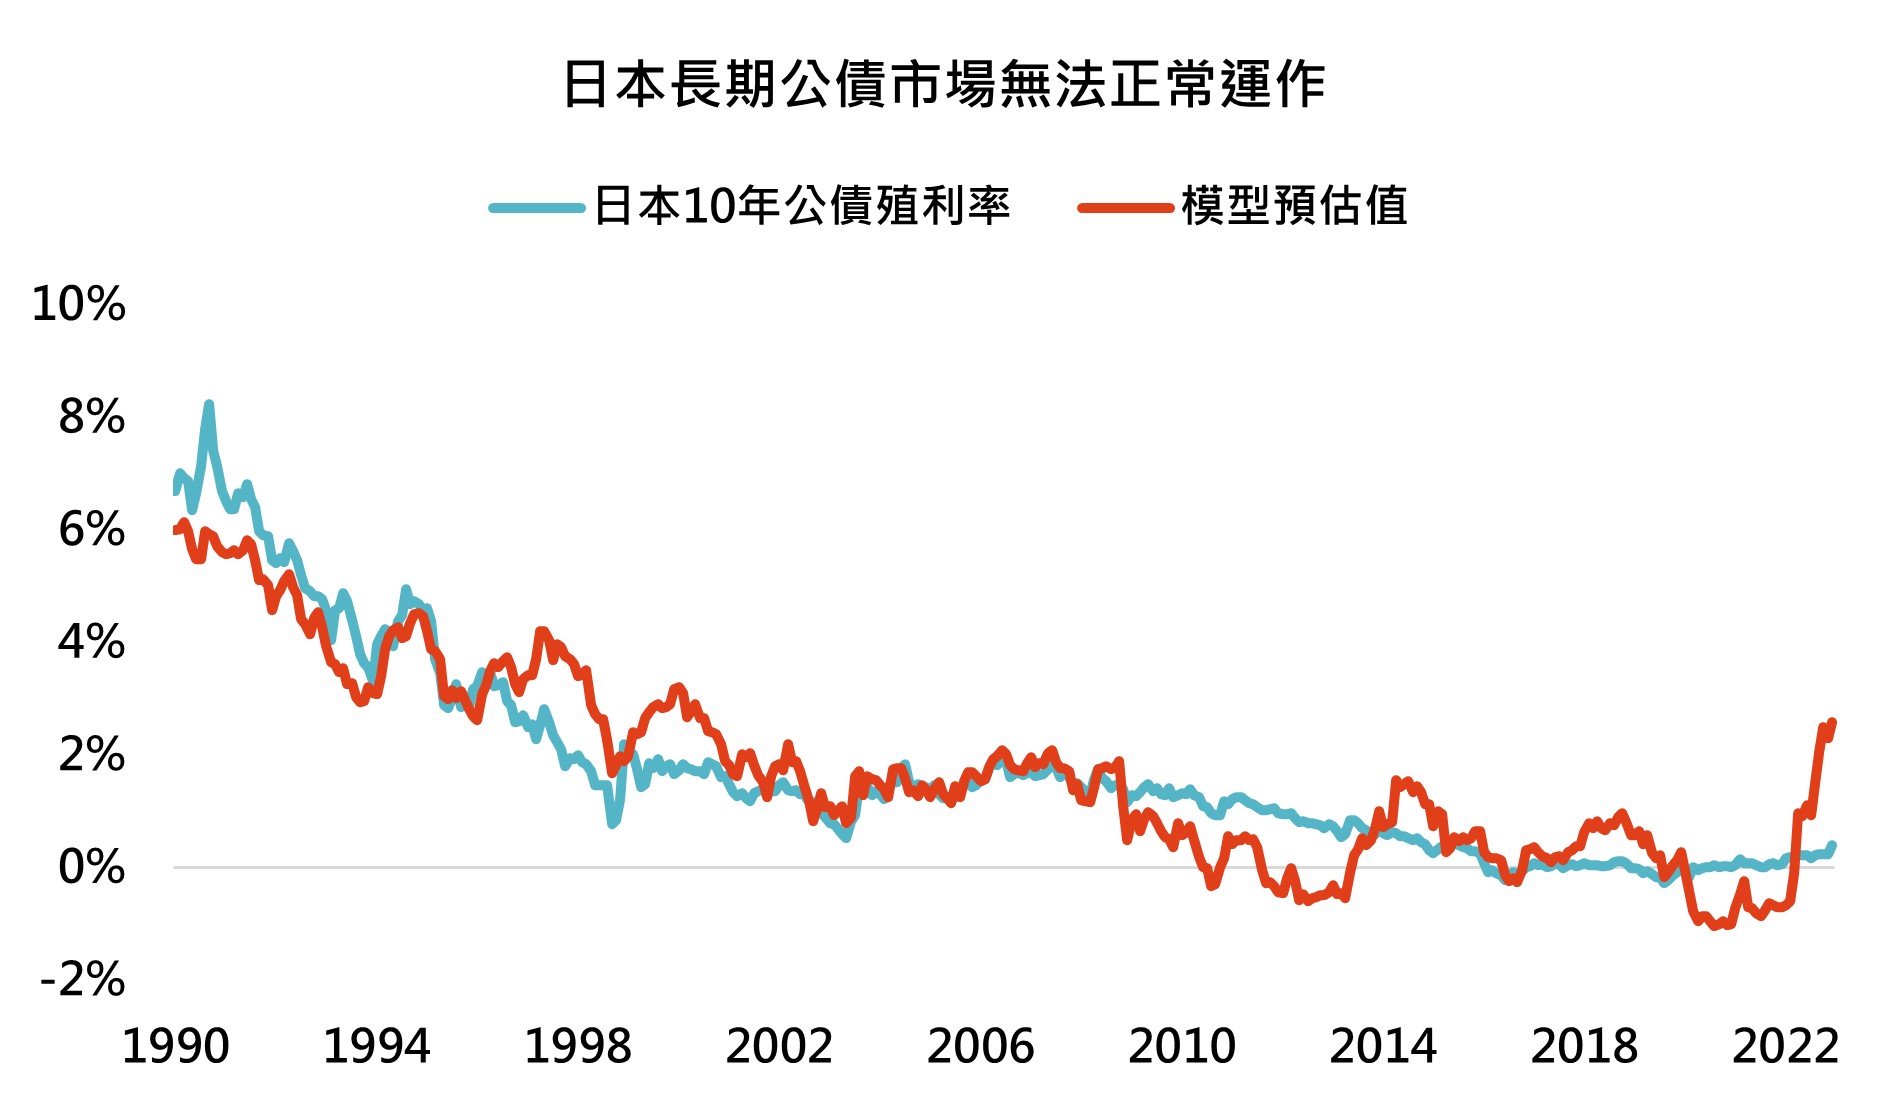 日本長期公債市場無法正常運作